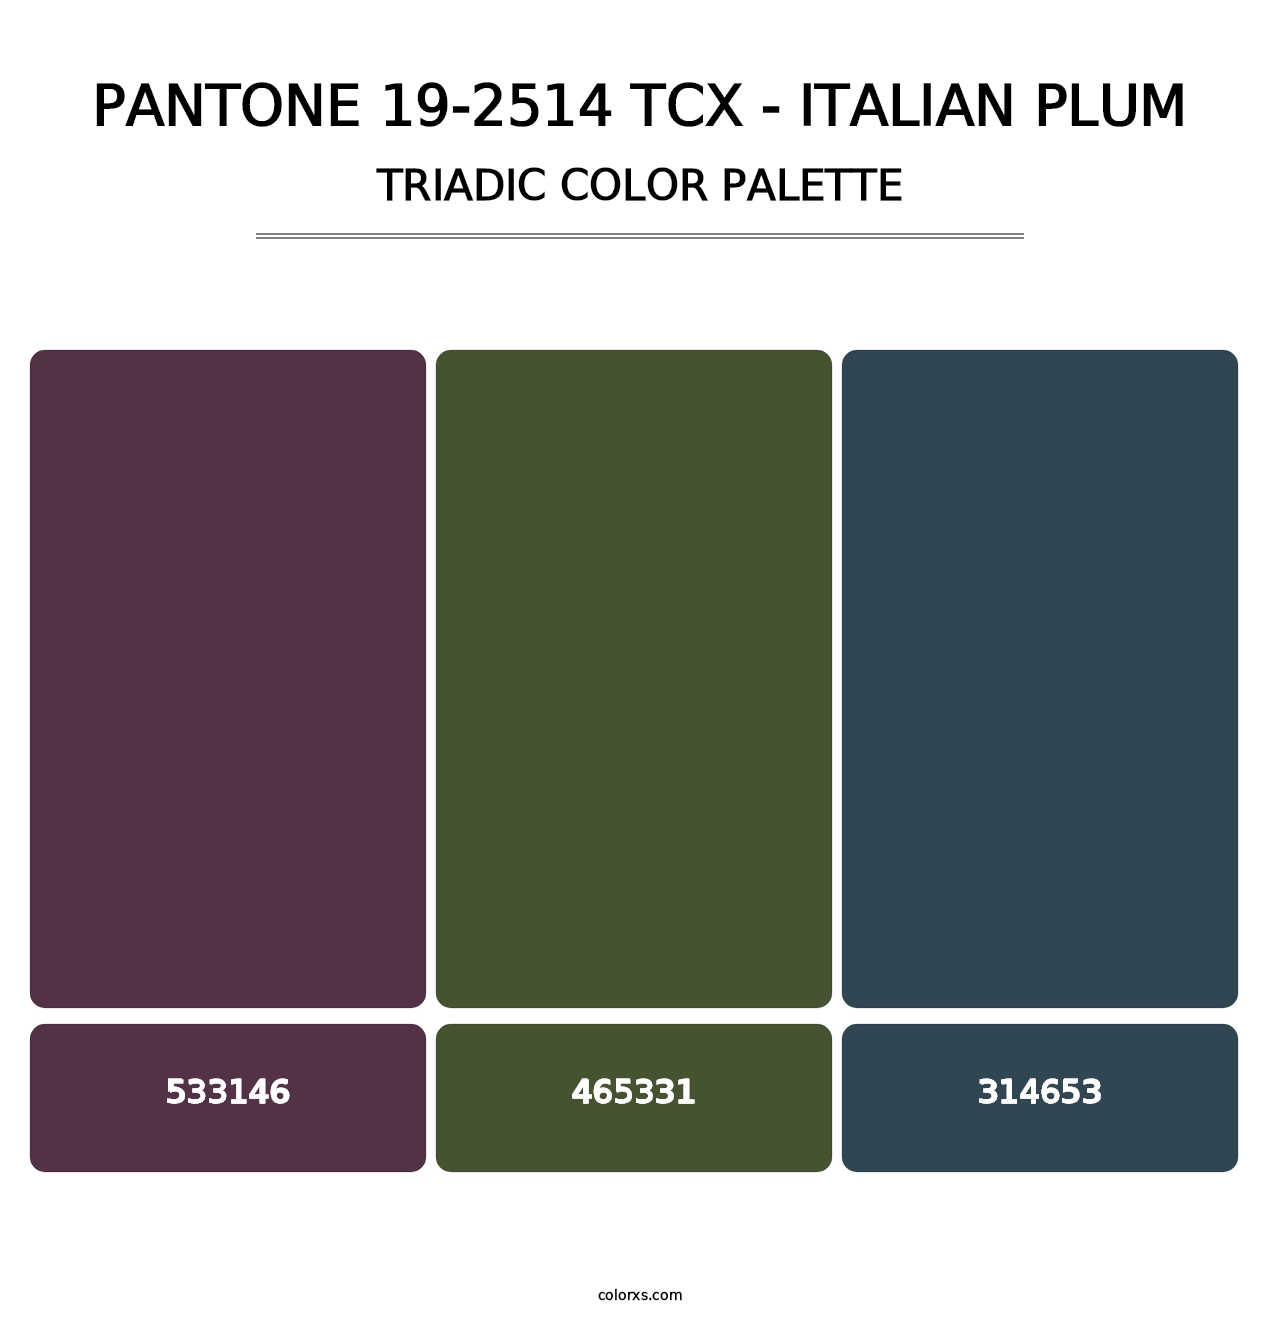 PANTONE 19-2514 TCX - Italian Plum - Triadic Color Palette